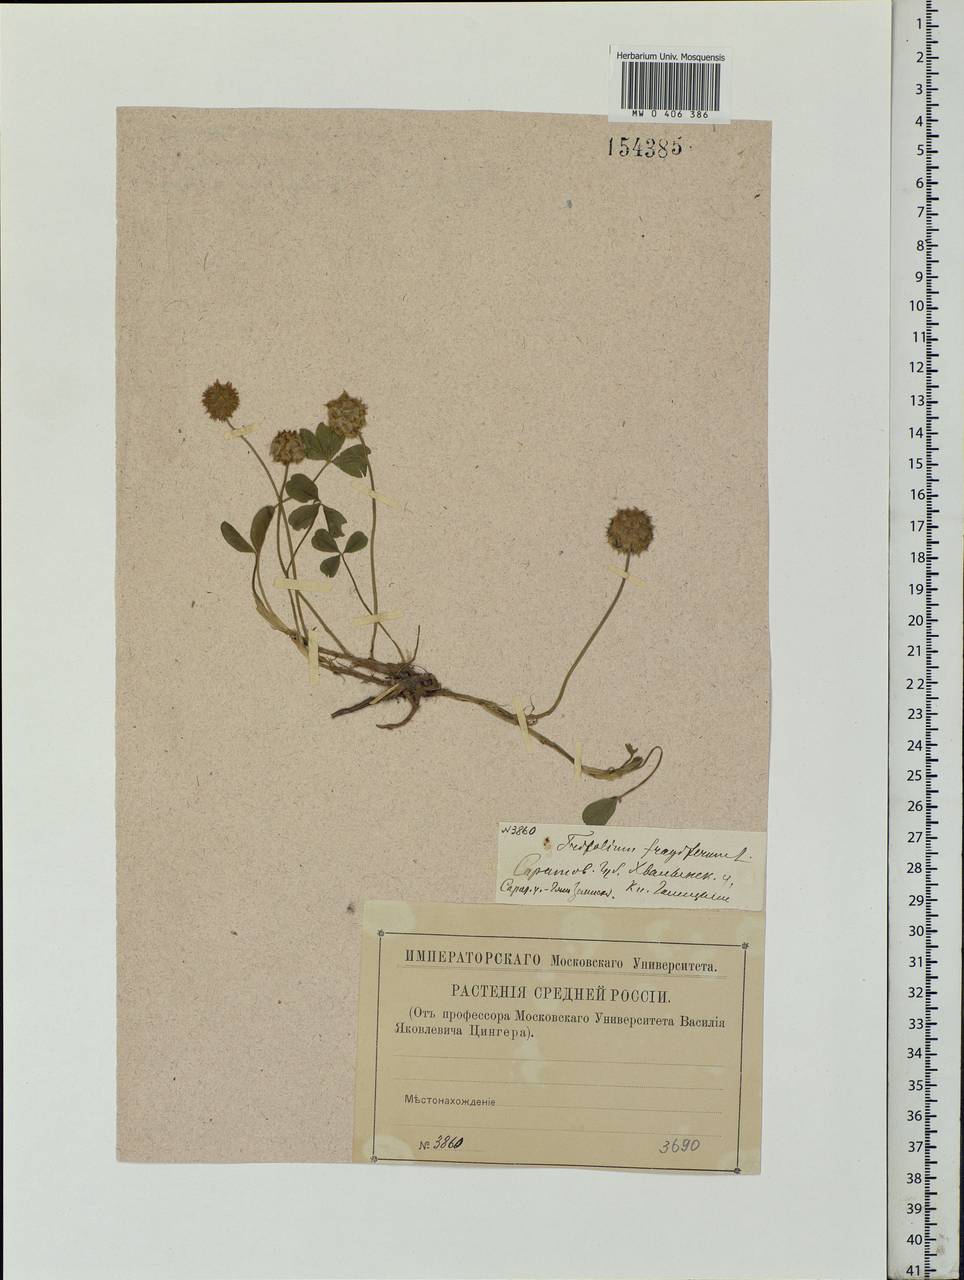 Trifolium fragiferum L., Eastern Europe, Lower Volga region (E9) (Russia)